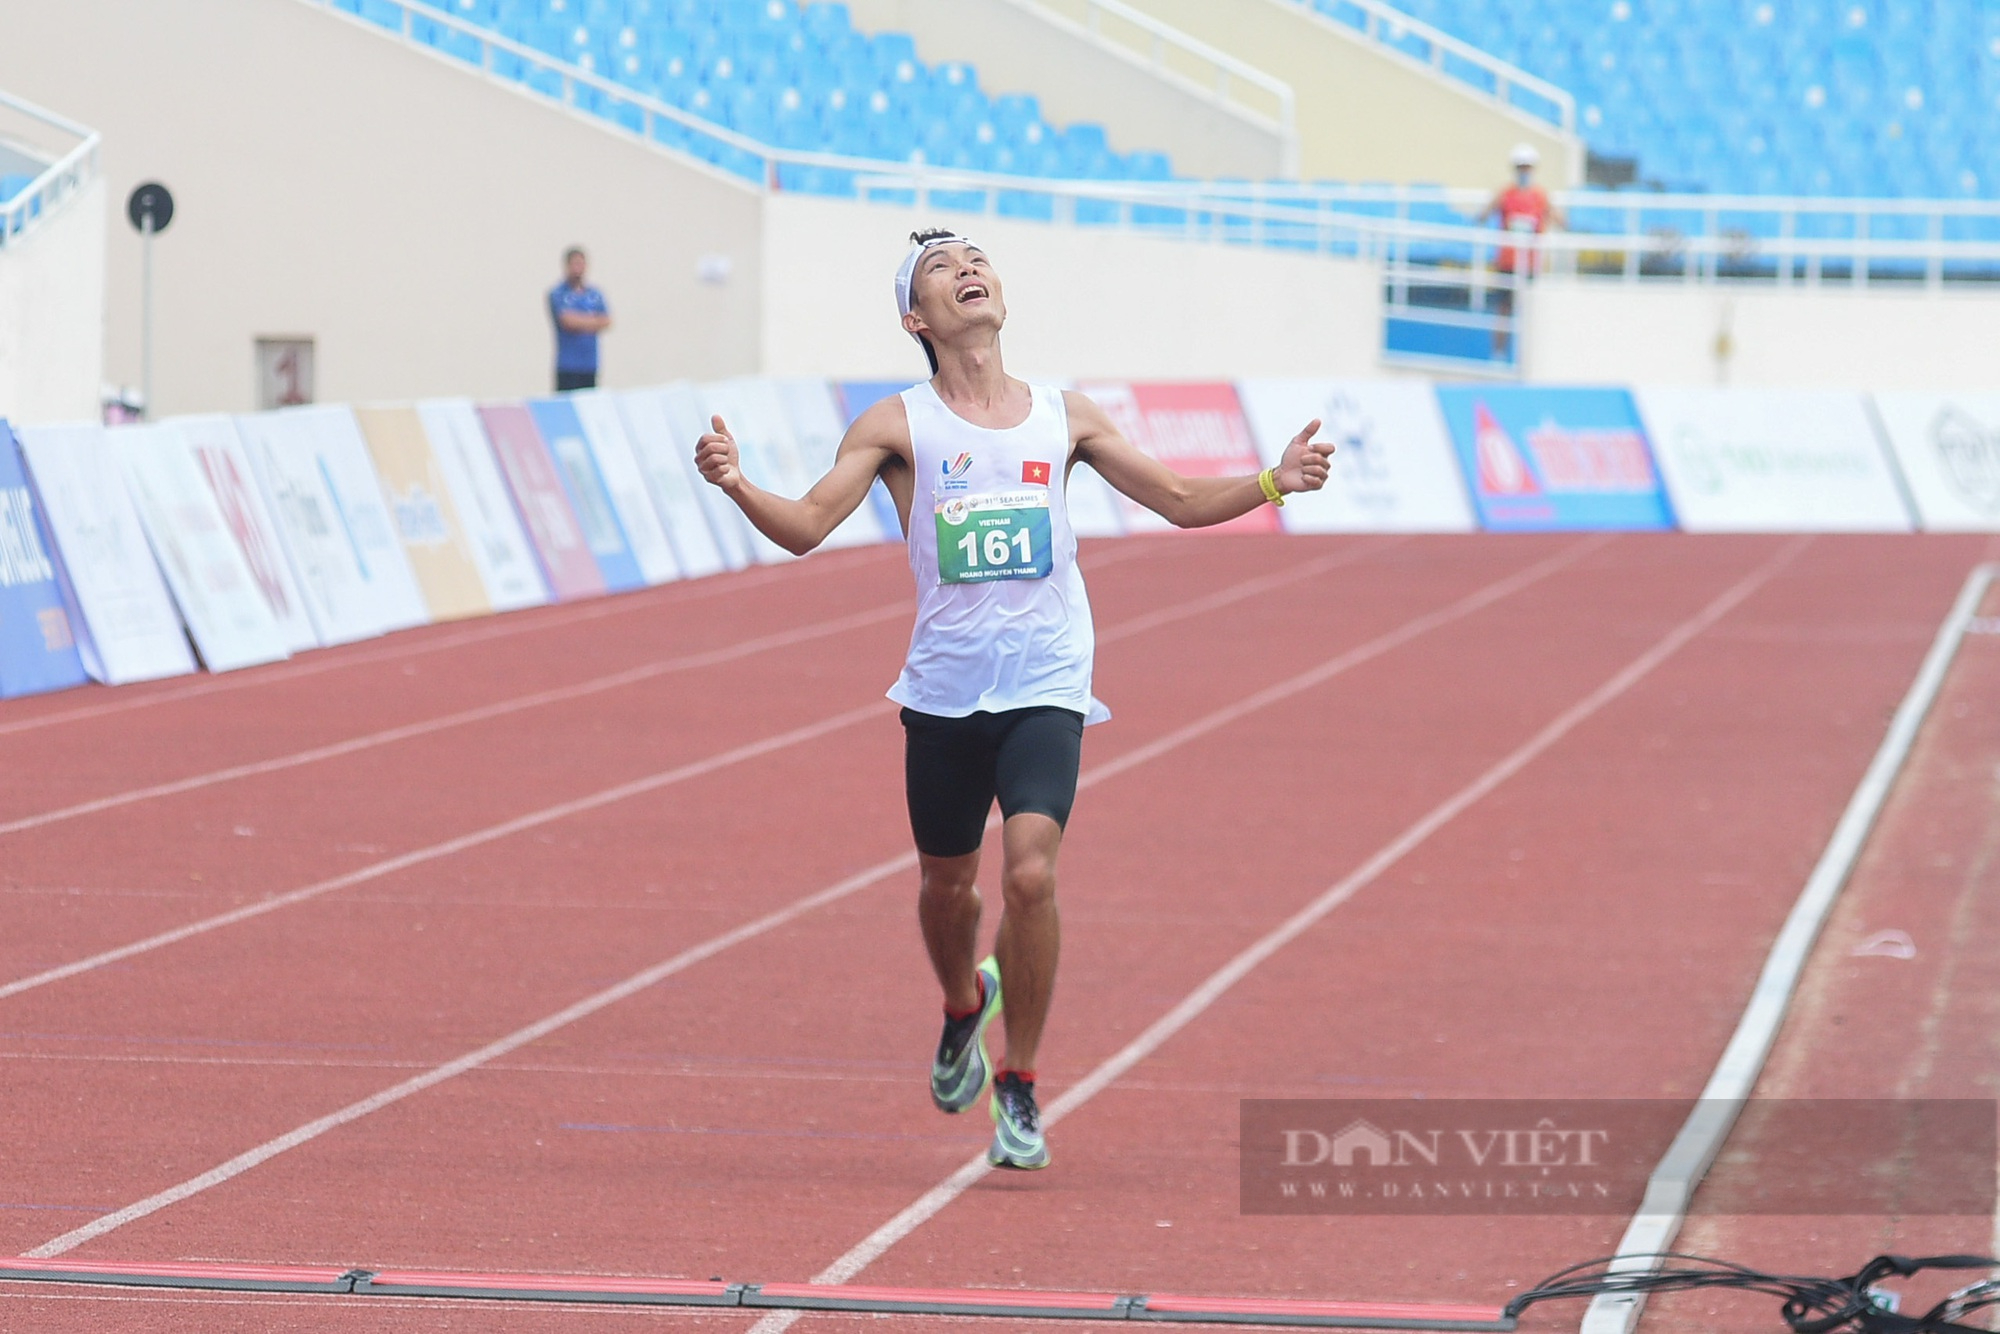 Hoàng Nguyên Thanh giành tấm HCV lịch sử cho marathon Việt Nam sau khi vượt qua 42,195km - Ảnh 4.